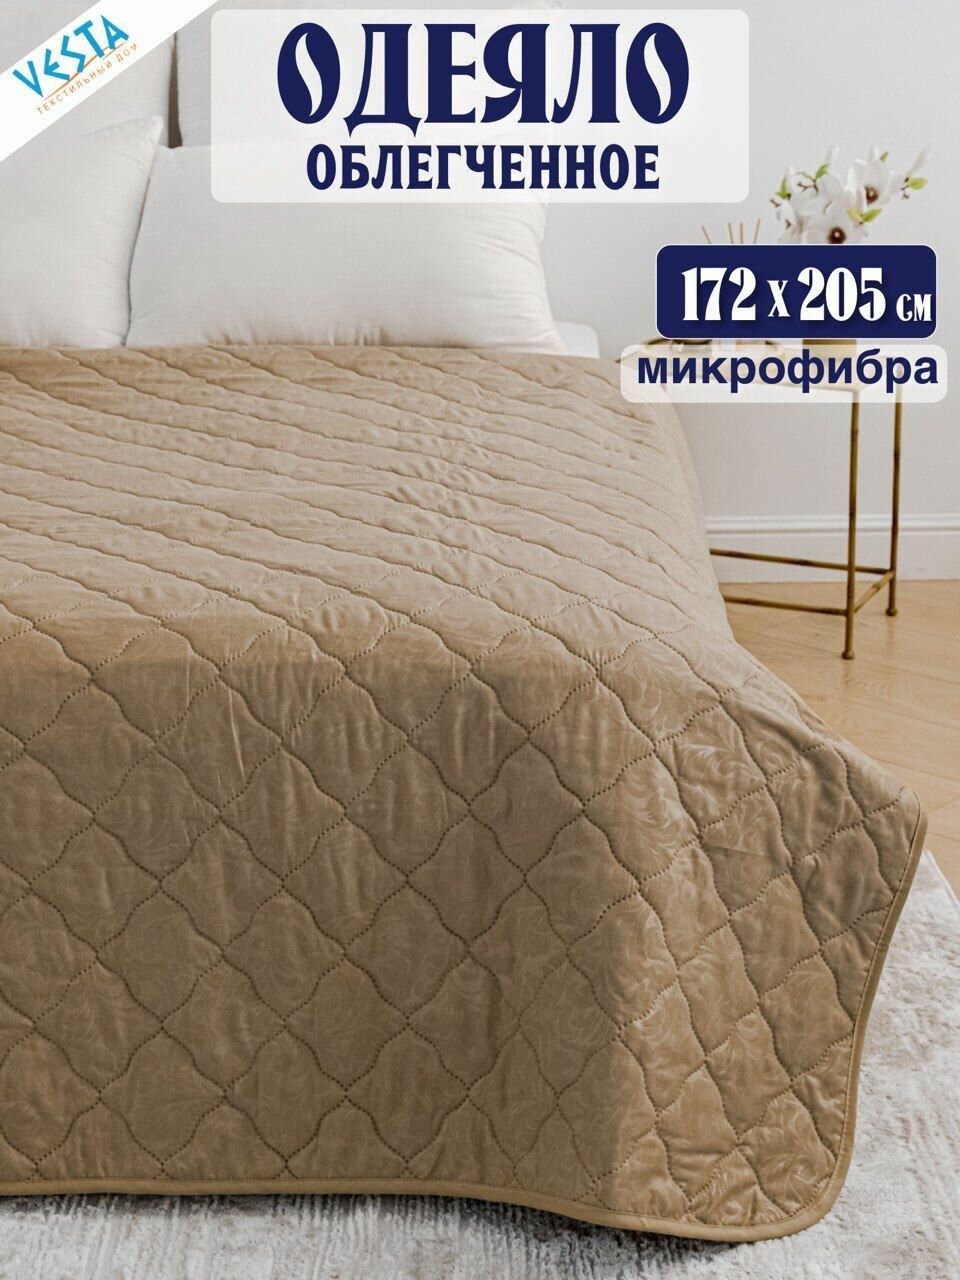 Одеяло летнее бежевое Vesta 2 спальное дешевое тонкое, материал микрофибра, покрывало легкое 172х205 см